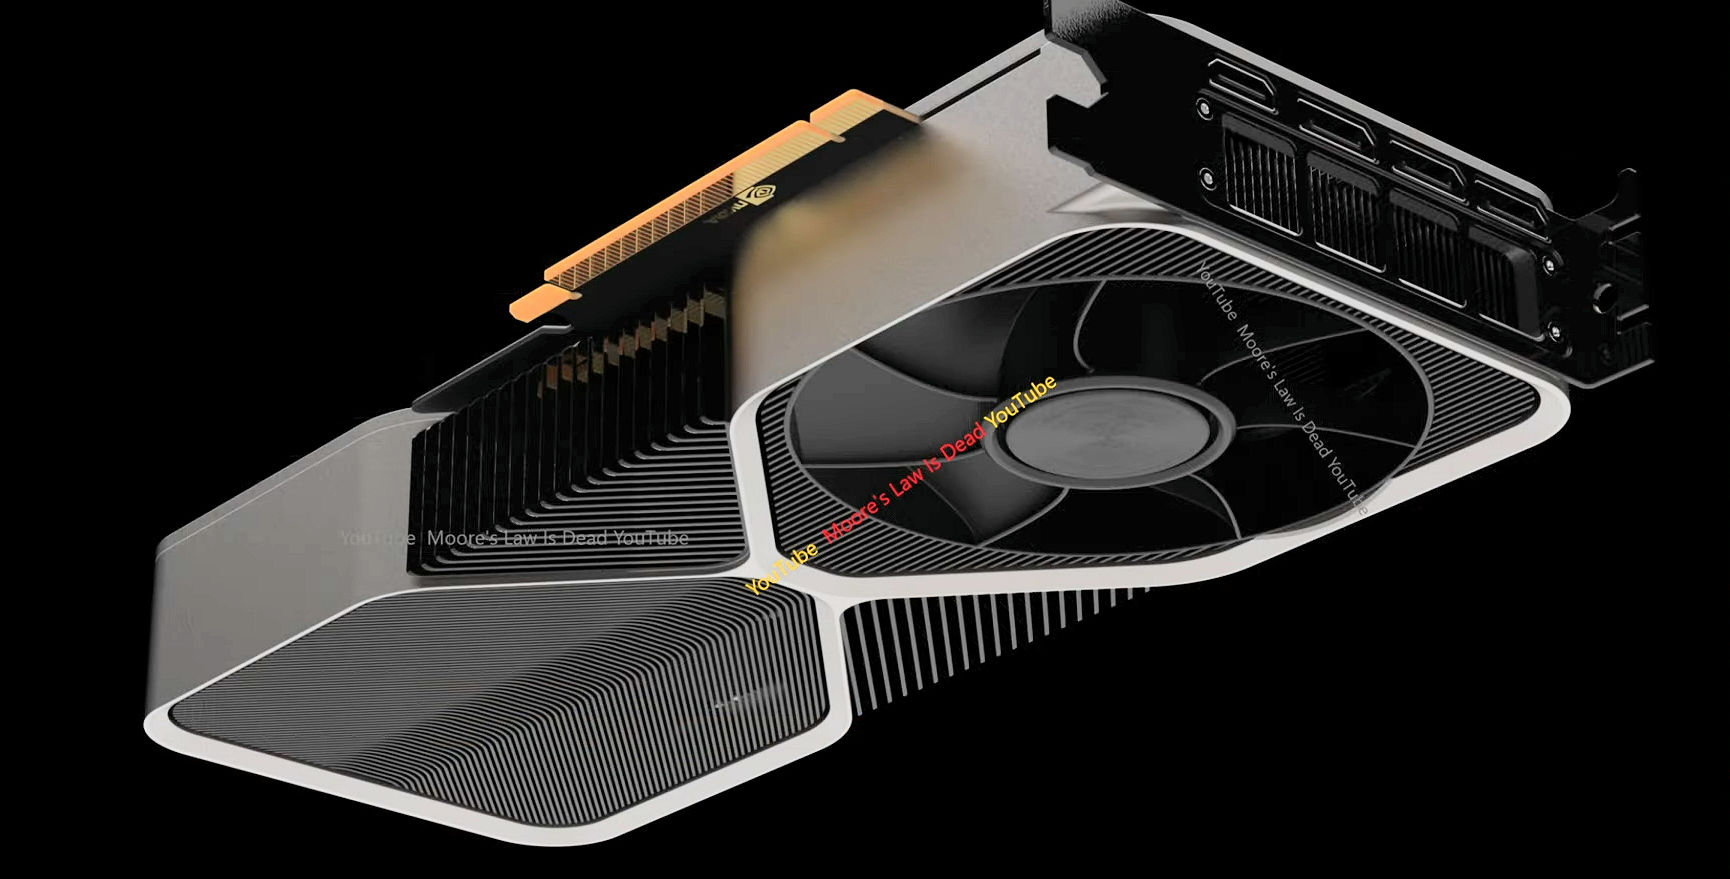 GeForce RTX 4070 Ti : la puissante carte graphique de Nvidia est